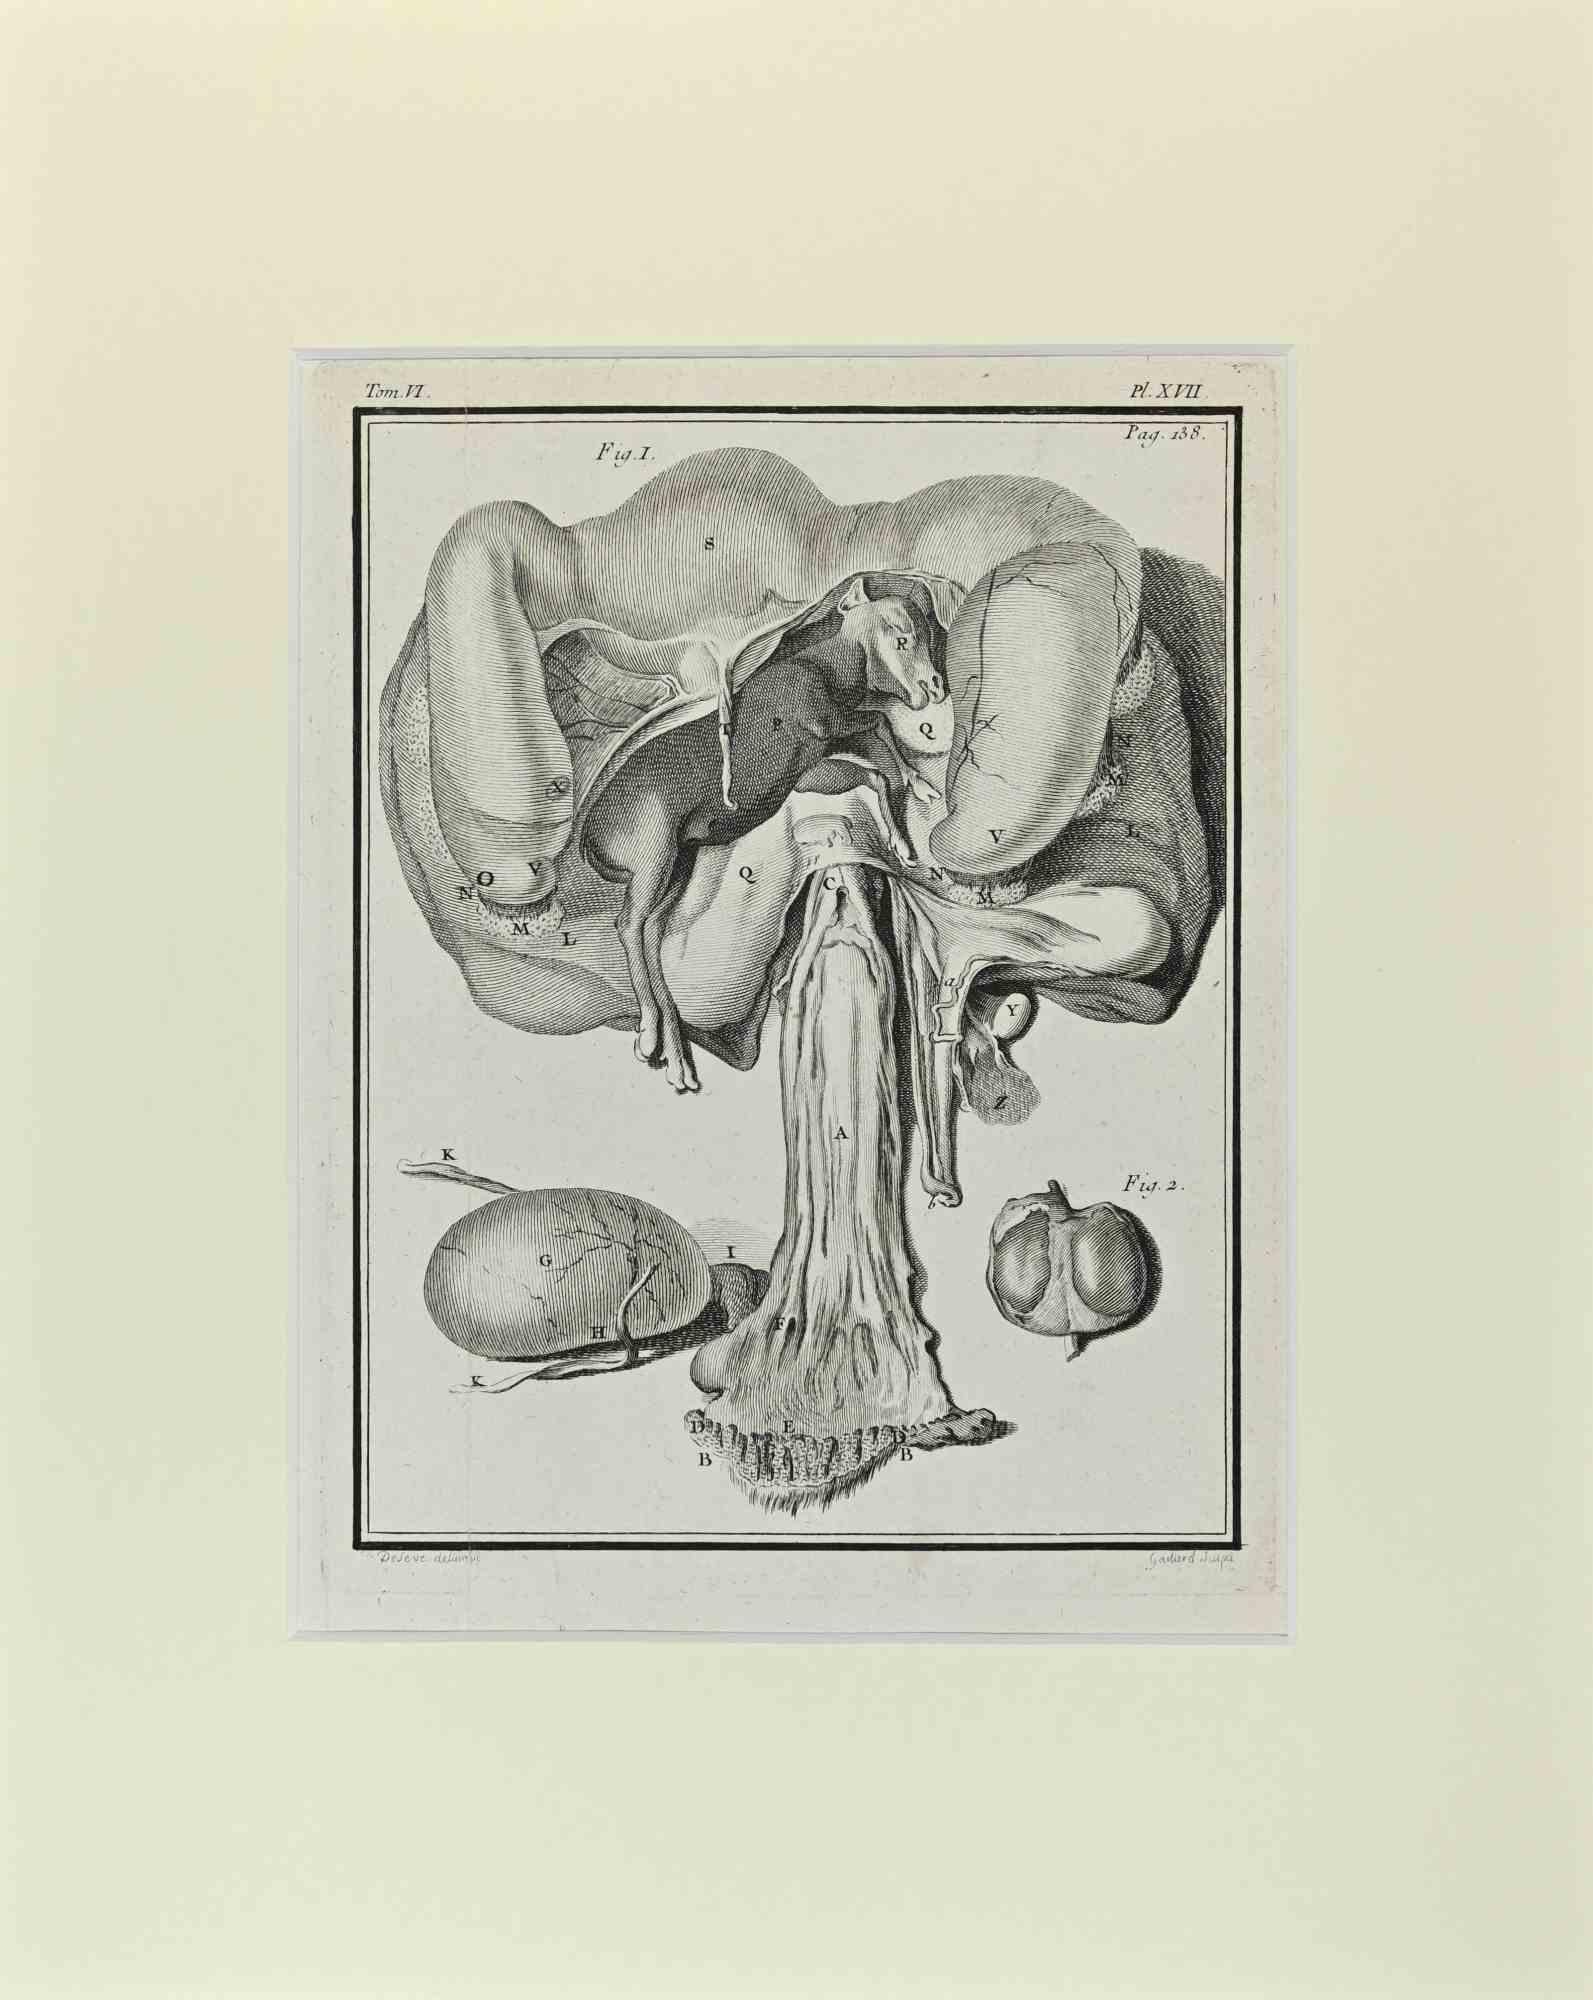 Jacques de Seve Figurative Print - Fetus - Veal - Etching by Jacques De sève - 1771